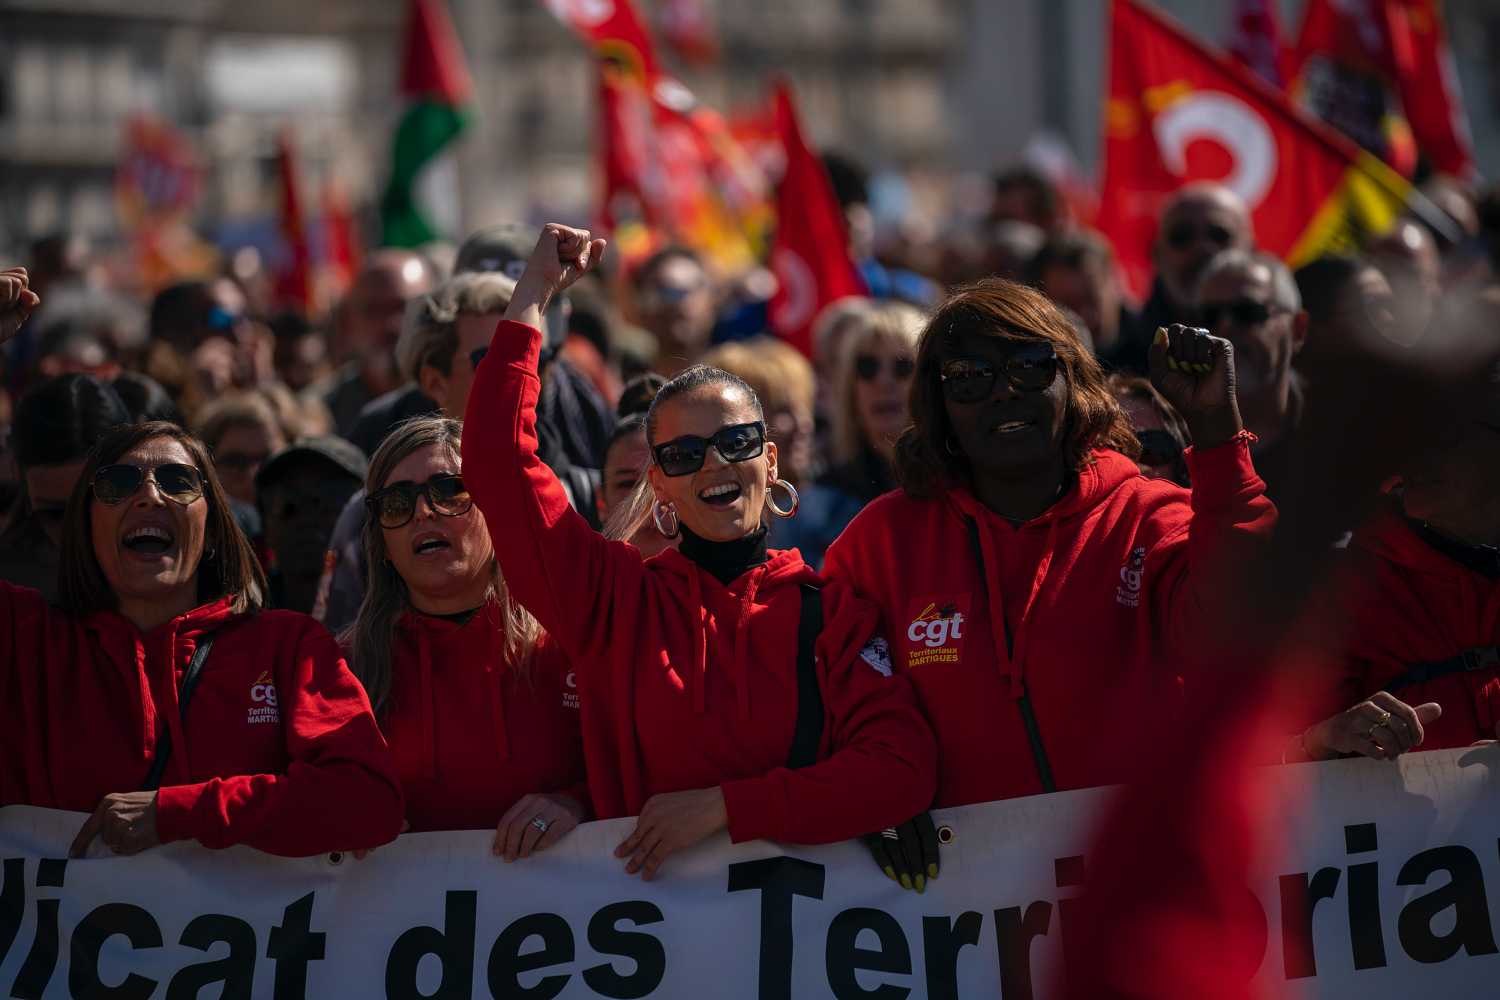 Τραγούδια του Μίκη Θεοδωράκη στην απεργιακή διαδήλωση της Μασσαλίας